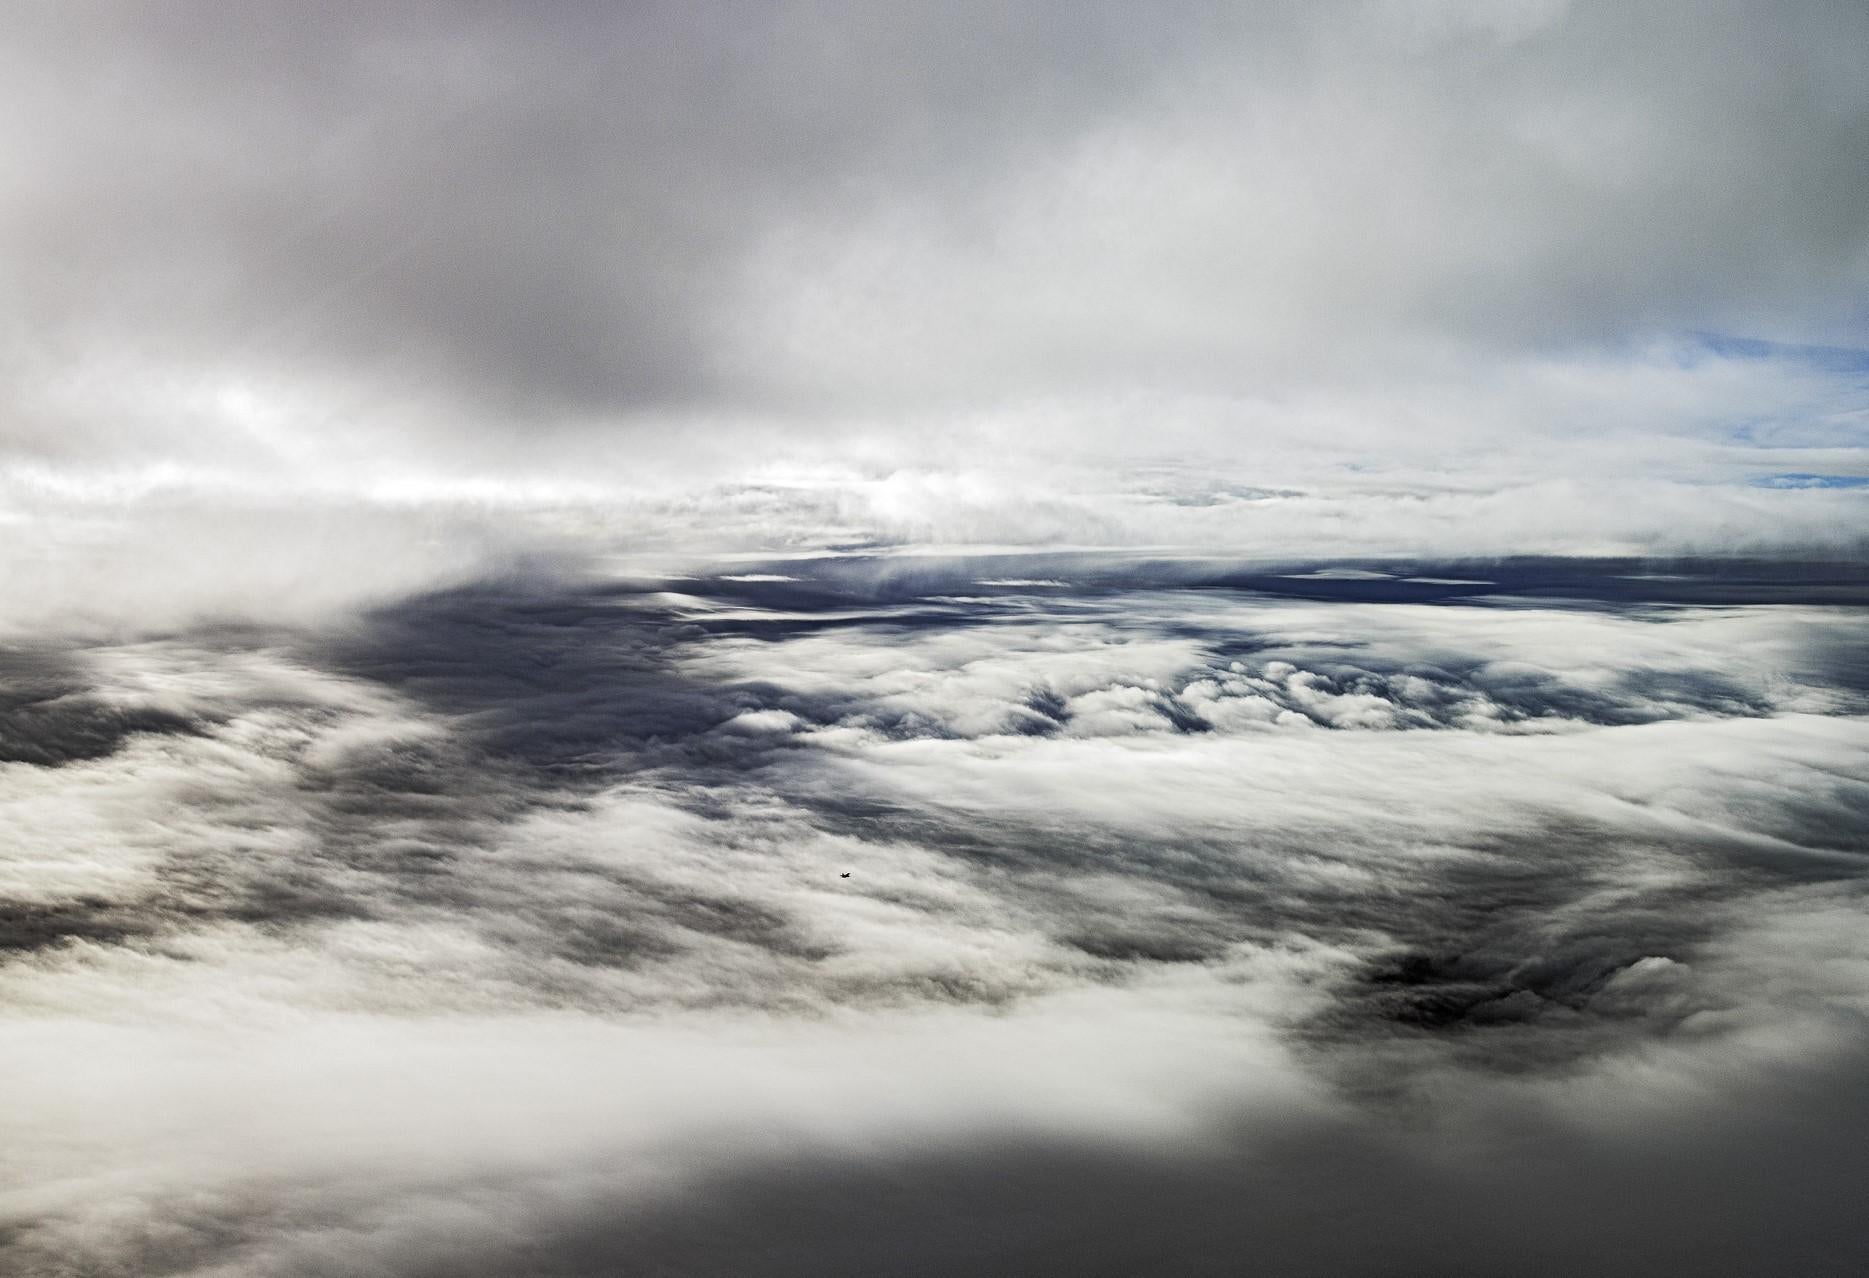 Landscape Photograph Stefan Darte - Lost in clouds, UK channel 2014 - # 1 / 5 Photographie d'art en édition limitée